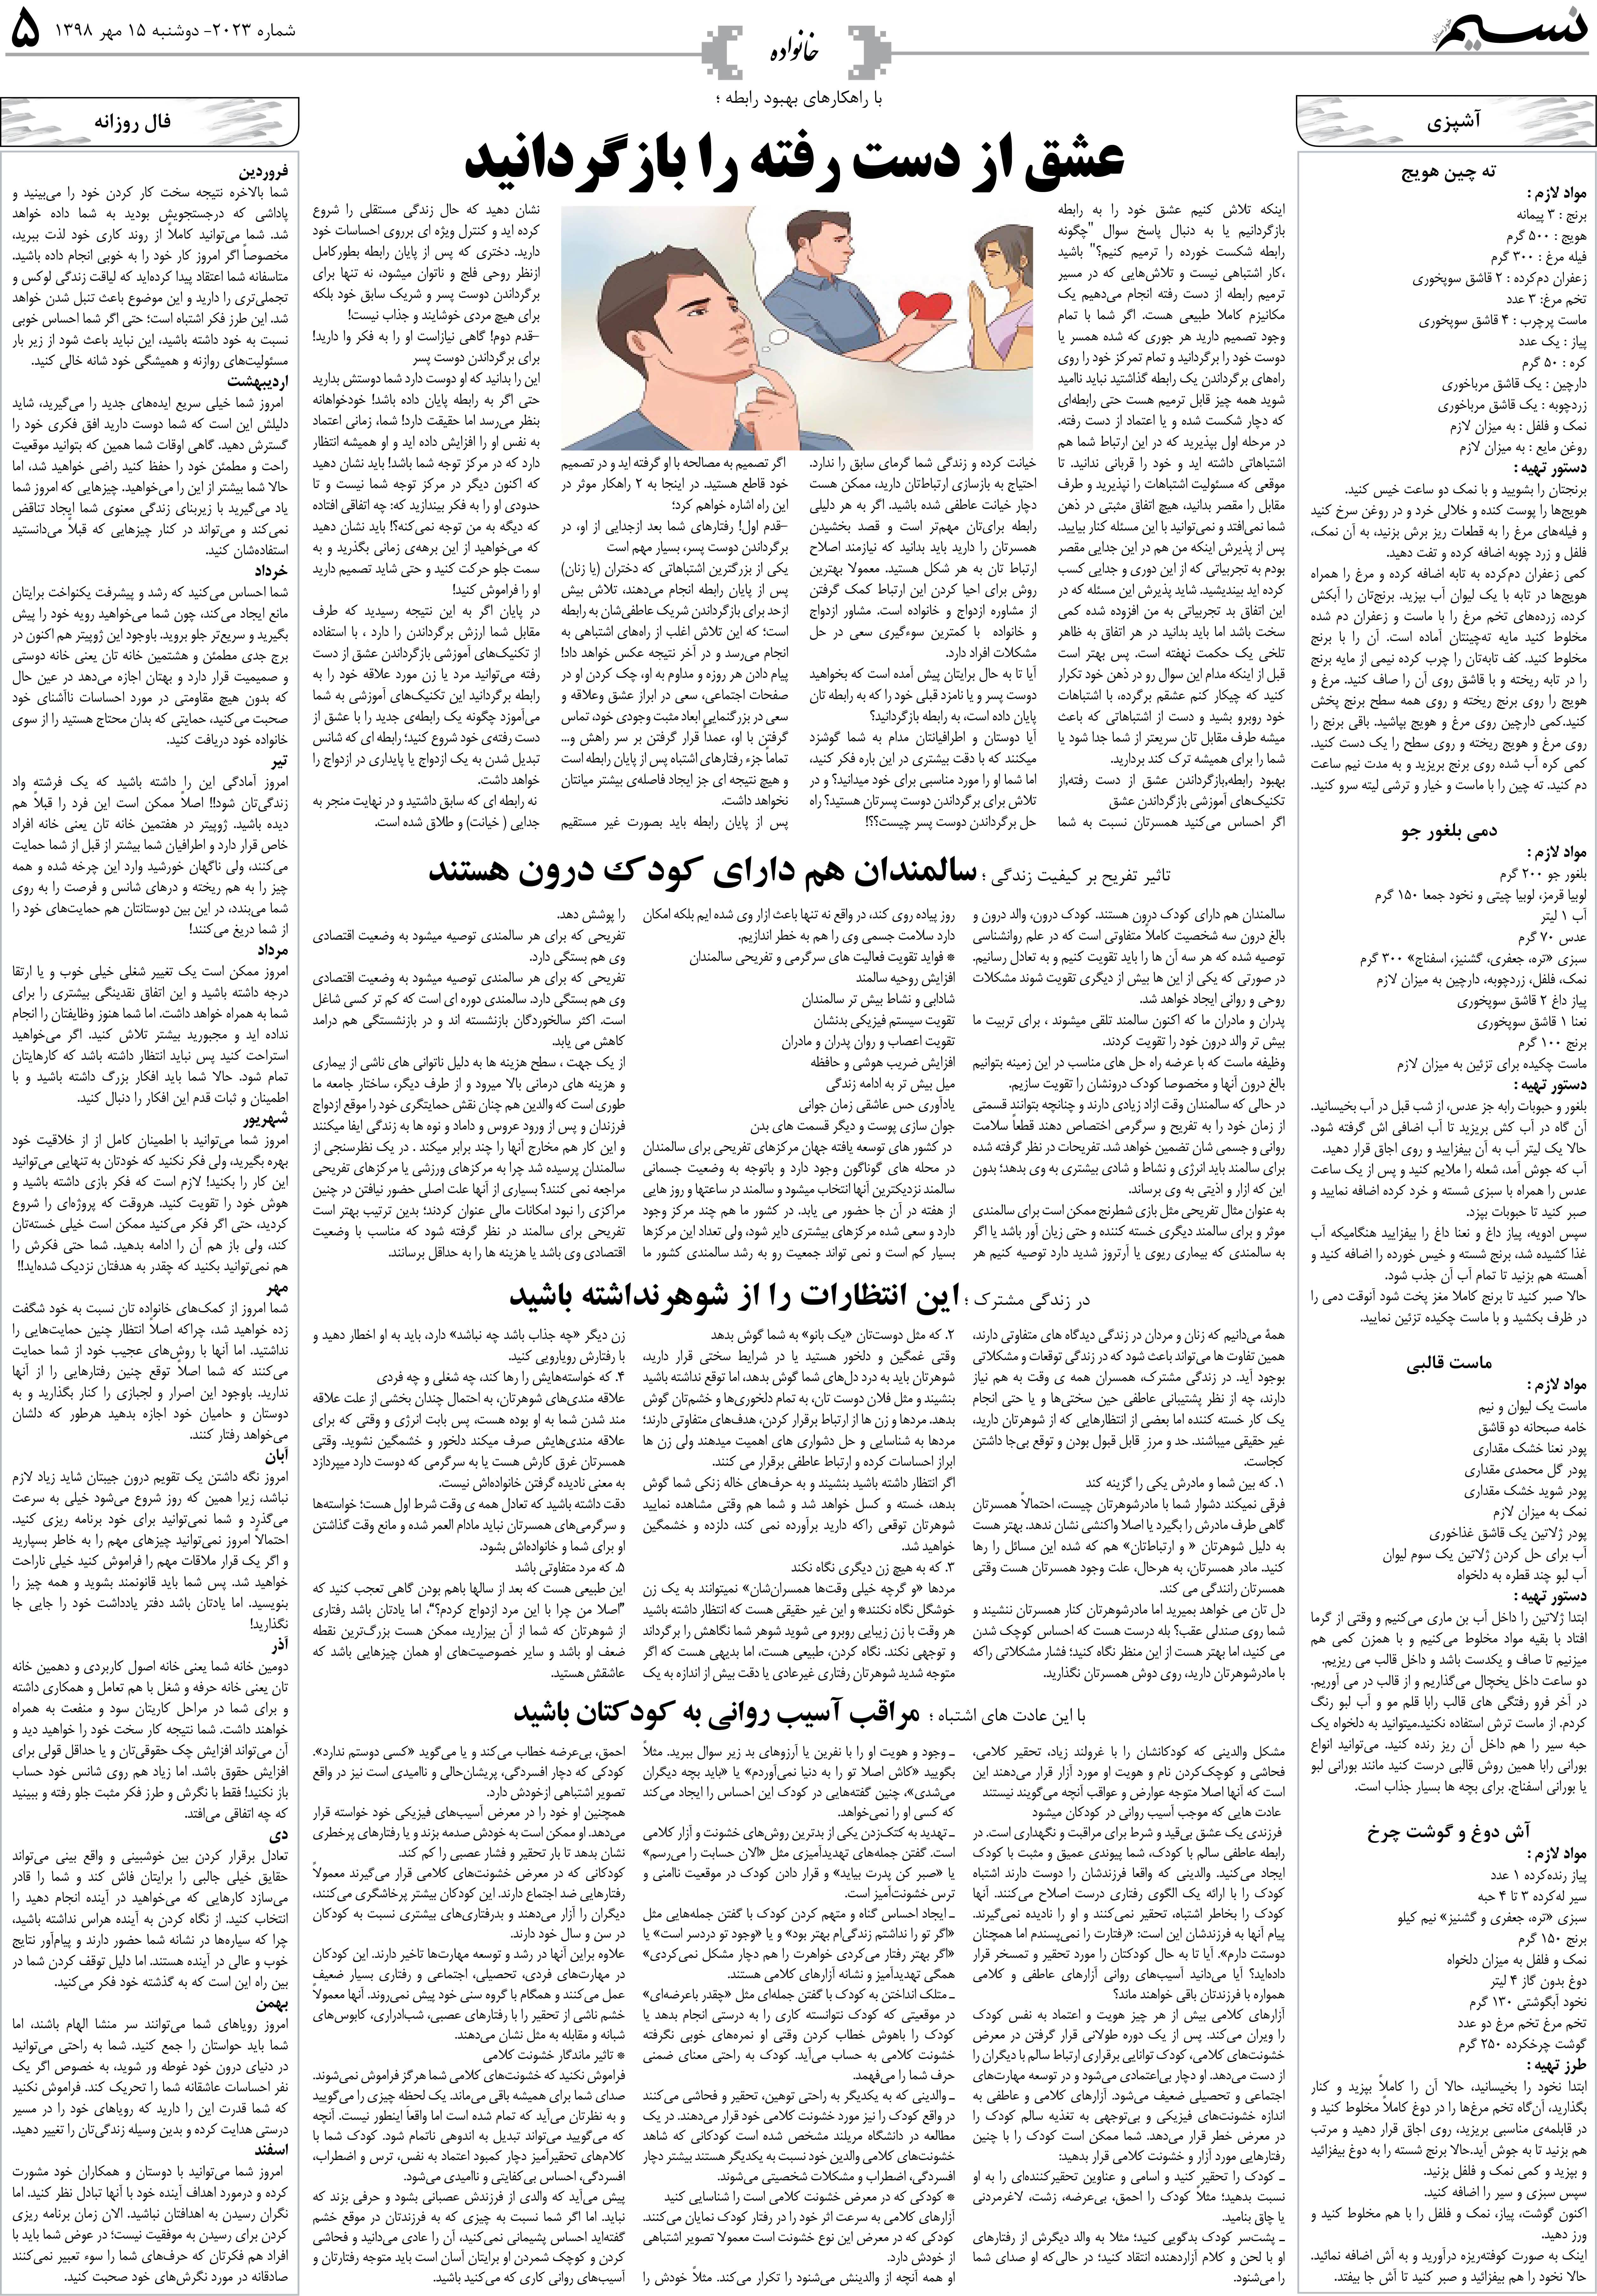 صفحه خانواده روزنامه نسیم شماره 2023